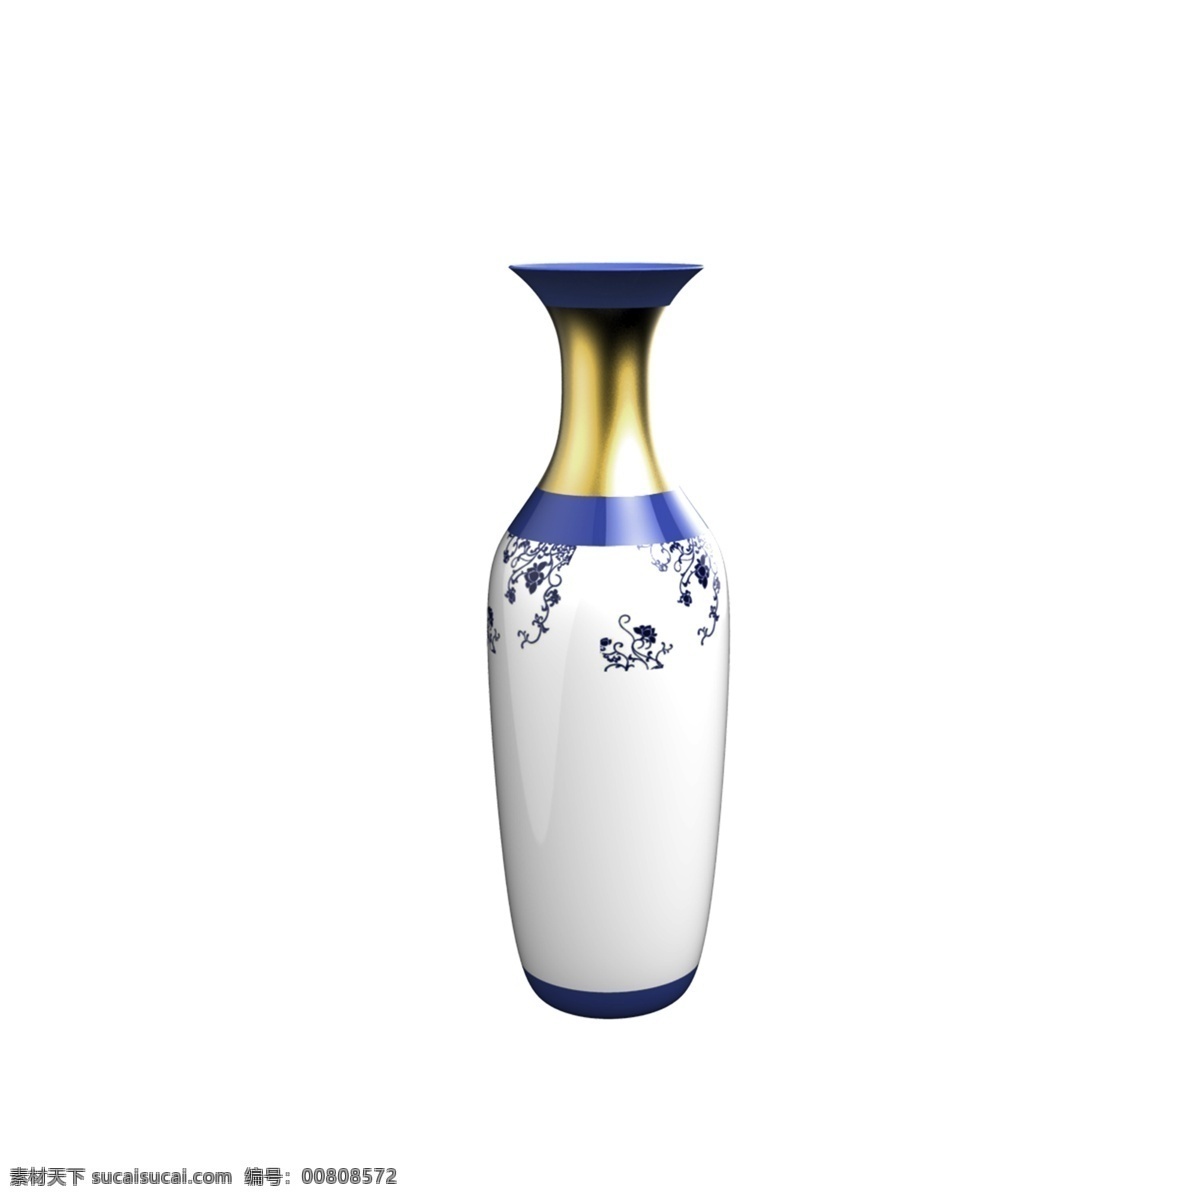 青花 陶瓷 花瓶 图案 摆件 家居装饰 家装节